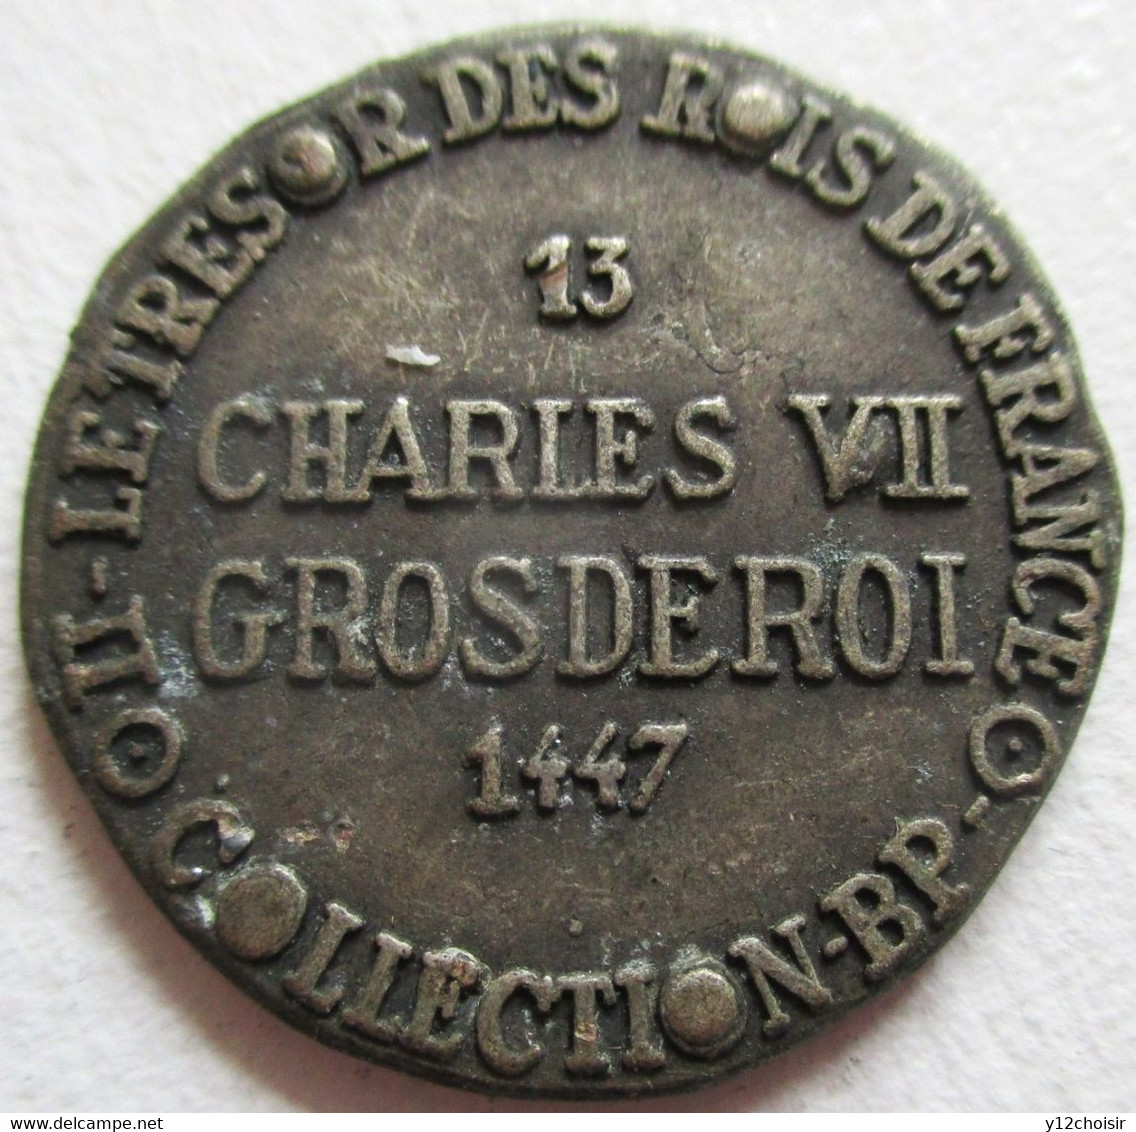 PIECE METAL CHARLES VII GROSDEROI 1447 FLEUR DE LYS LE TRESOR DES ROIS DE FRANCE COLLECTION BP - Fictifs & Spécimens